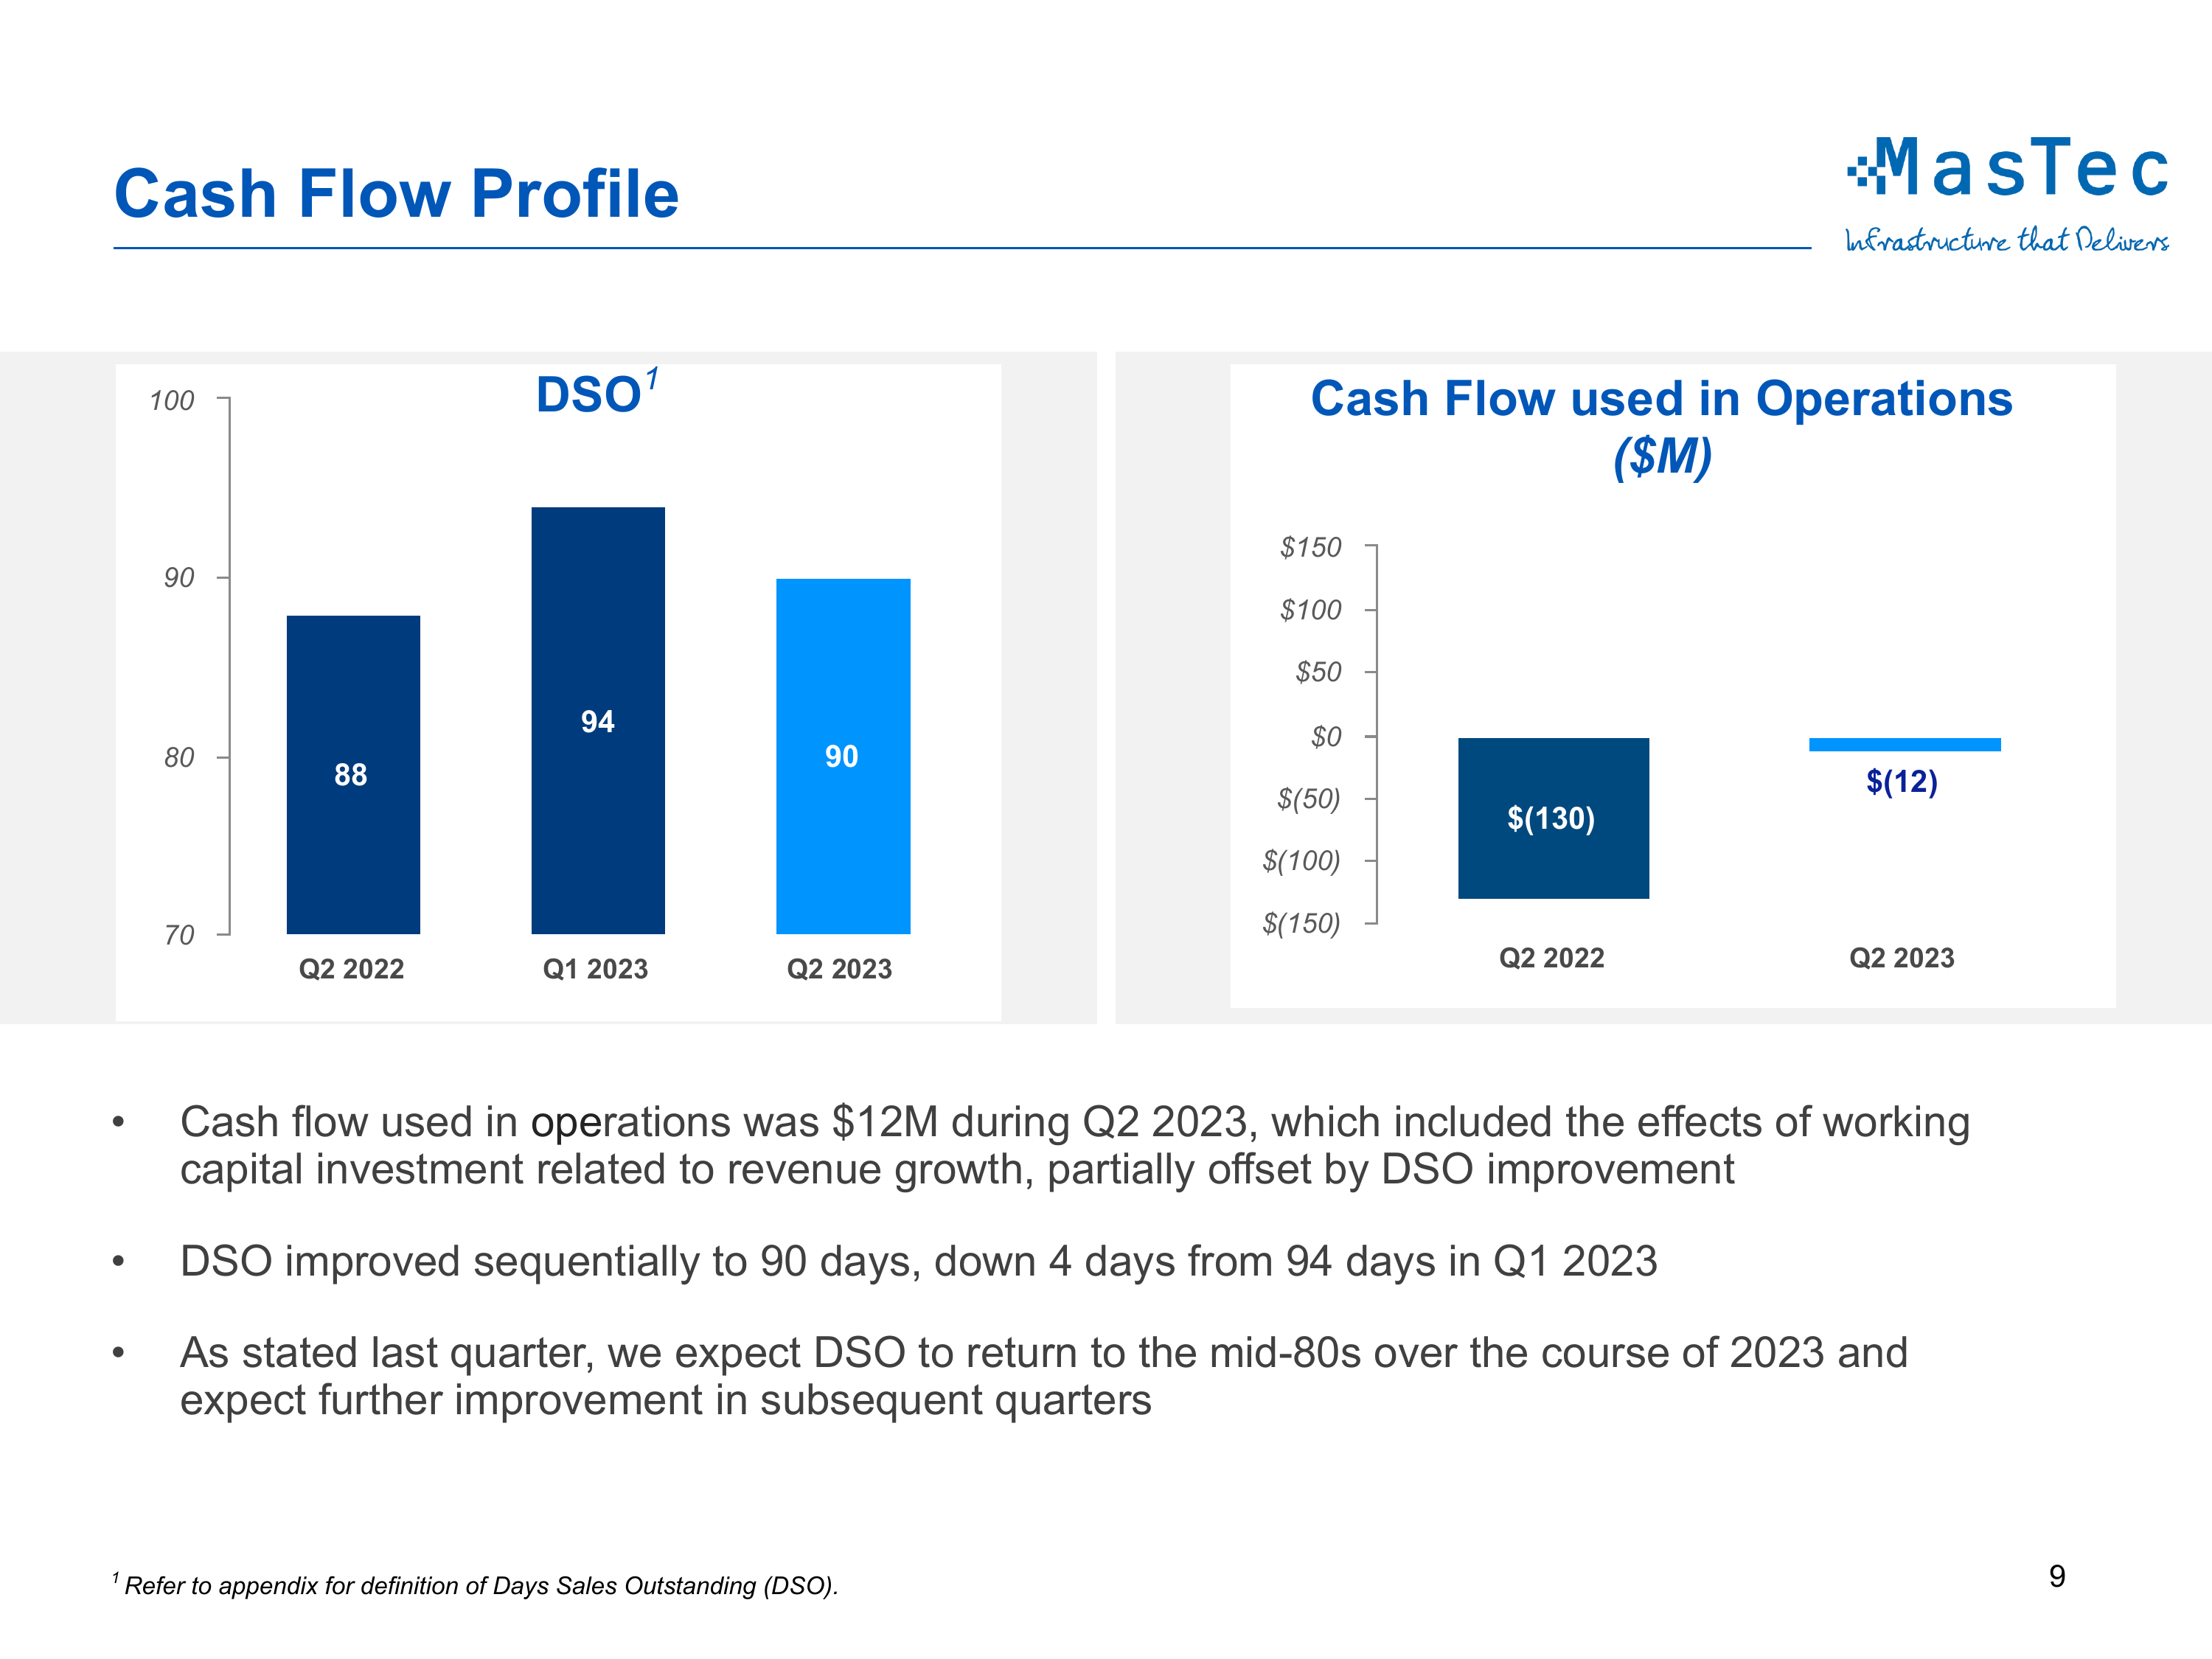 Cash Flow Profile 

